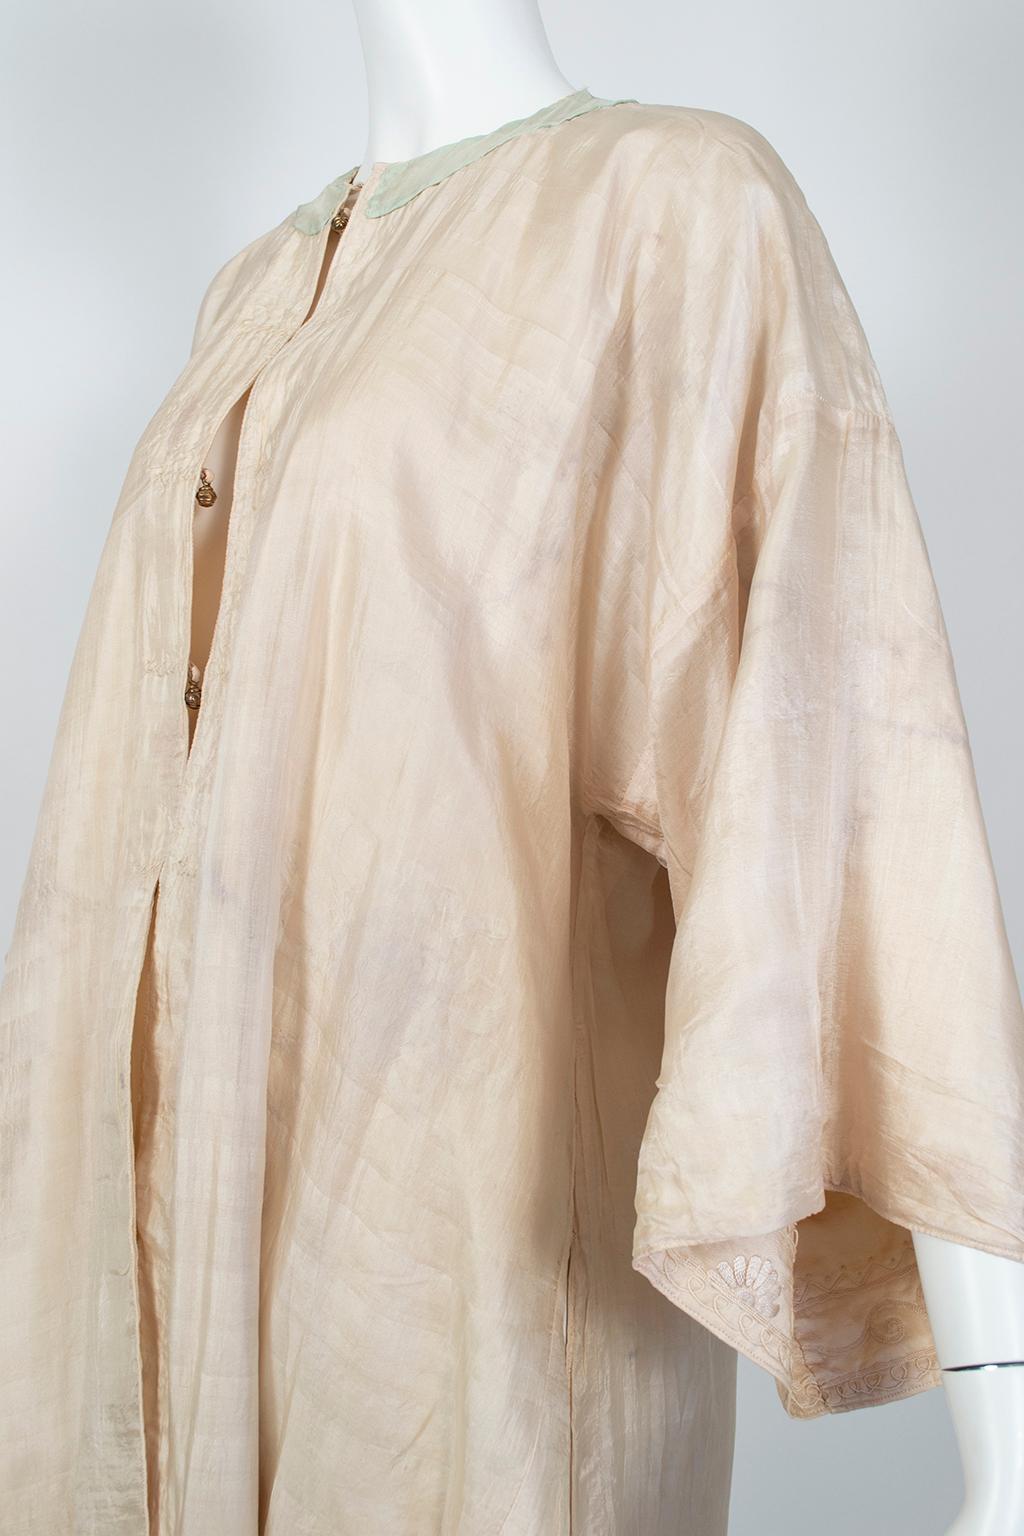 Robe édouardienne rose pâle en soie de Canton brodée (taille L/S), années 1900 en vente 9